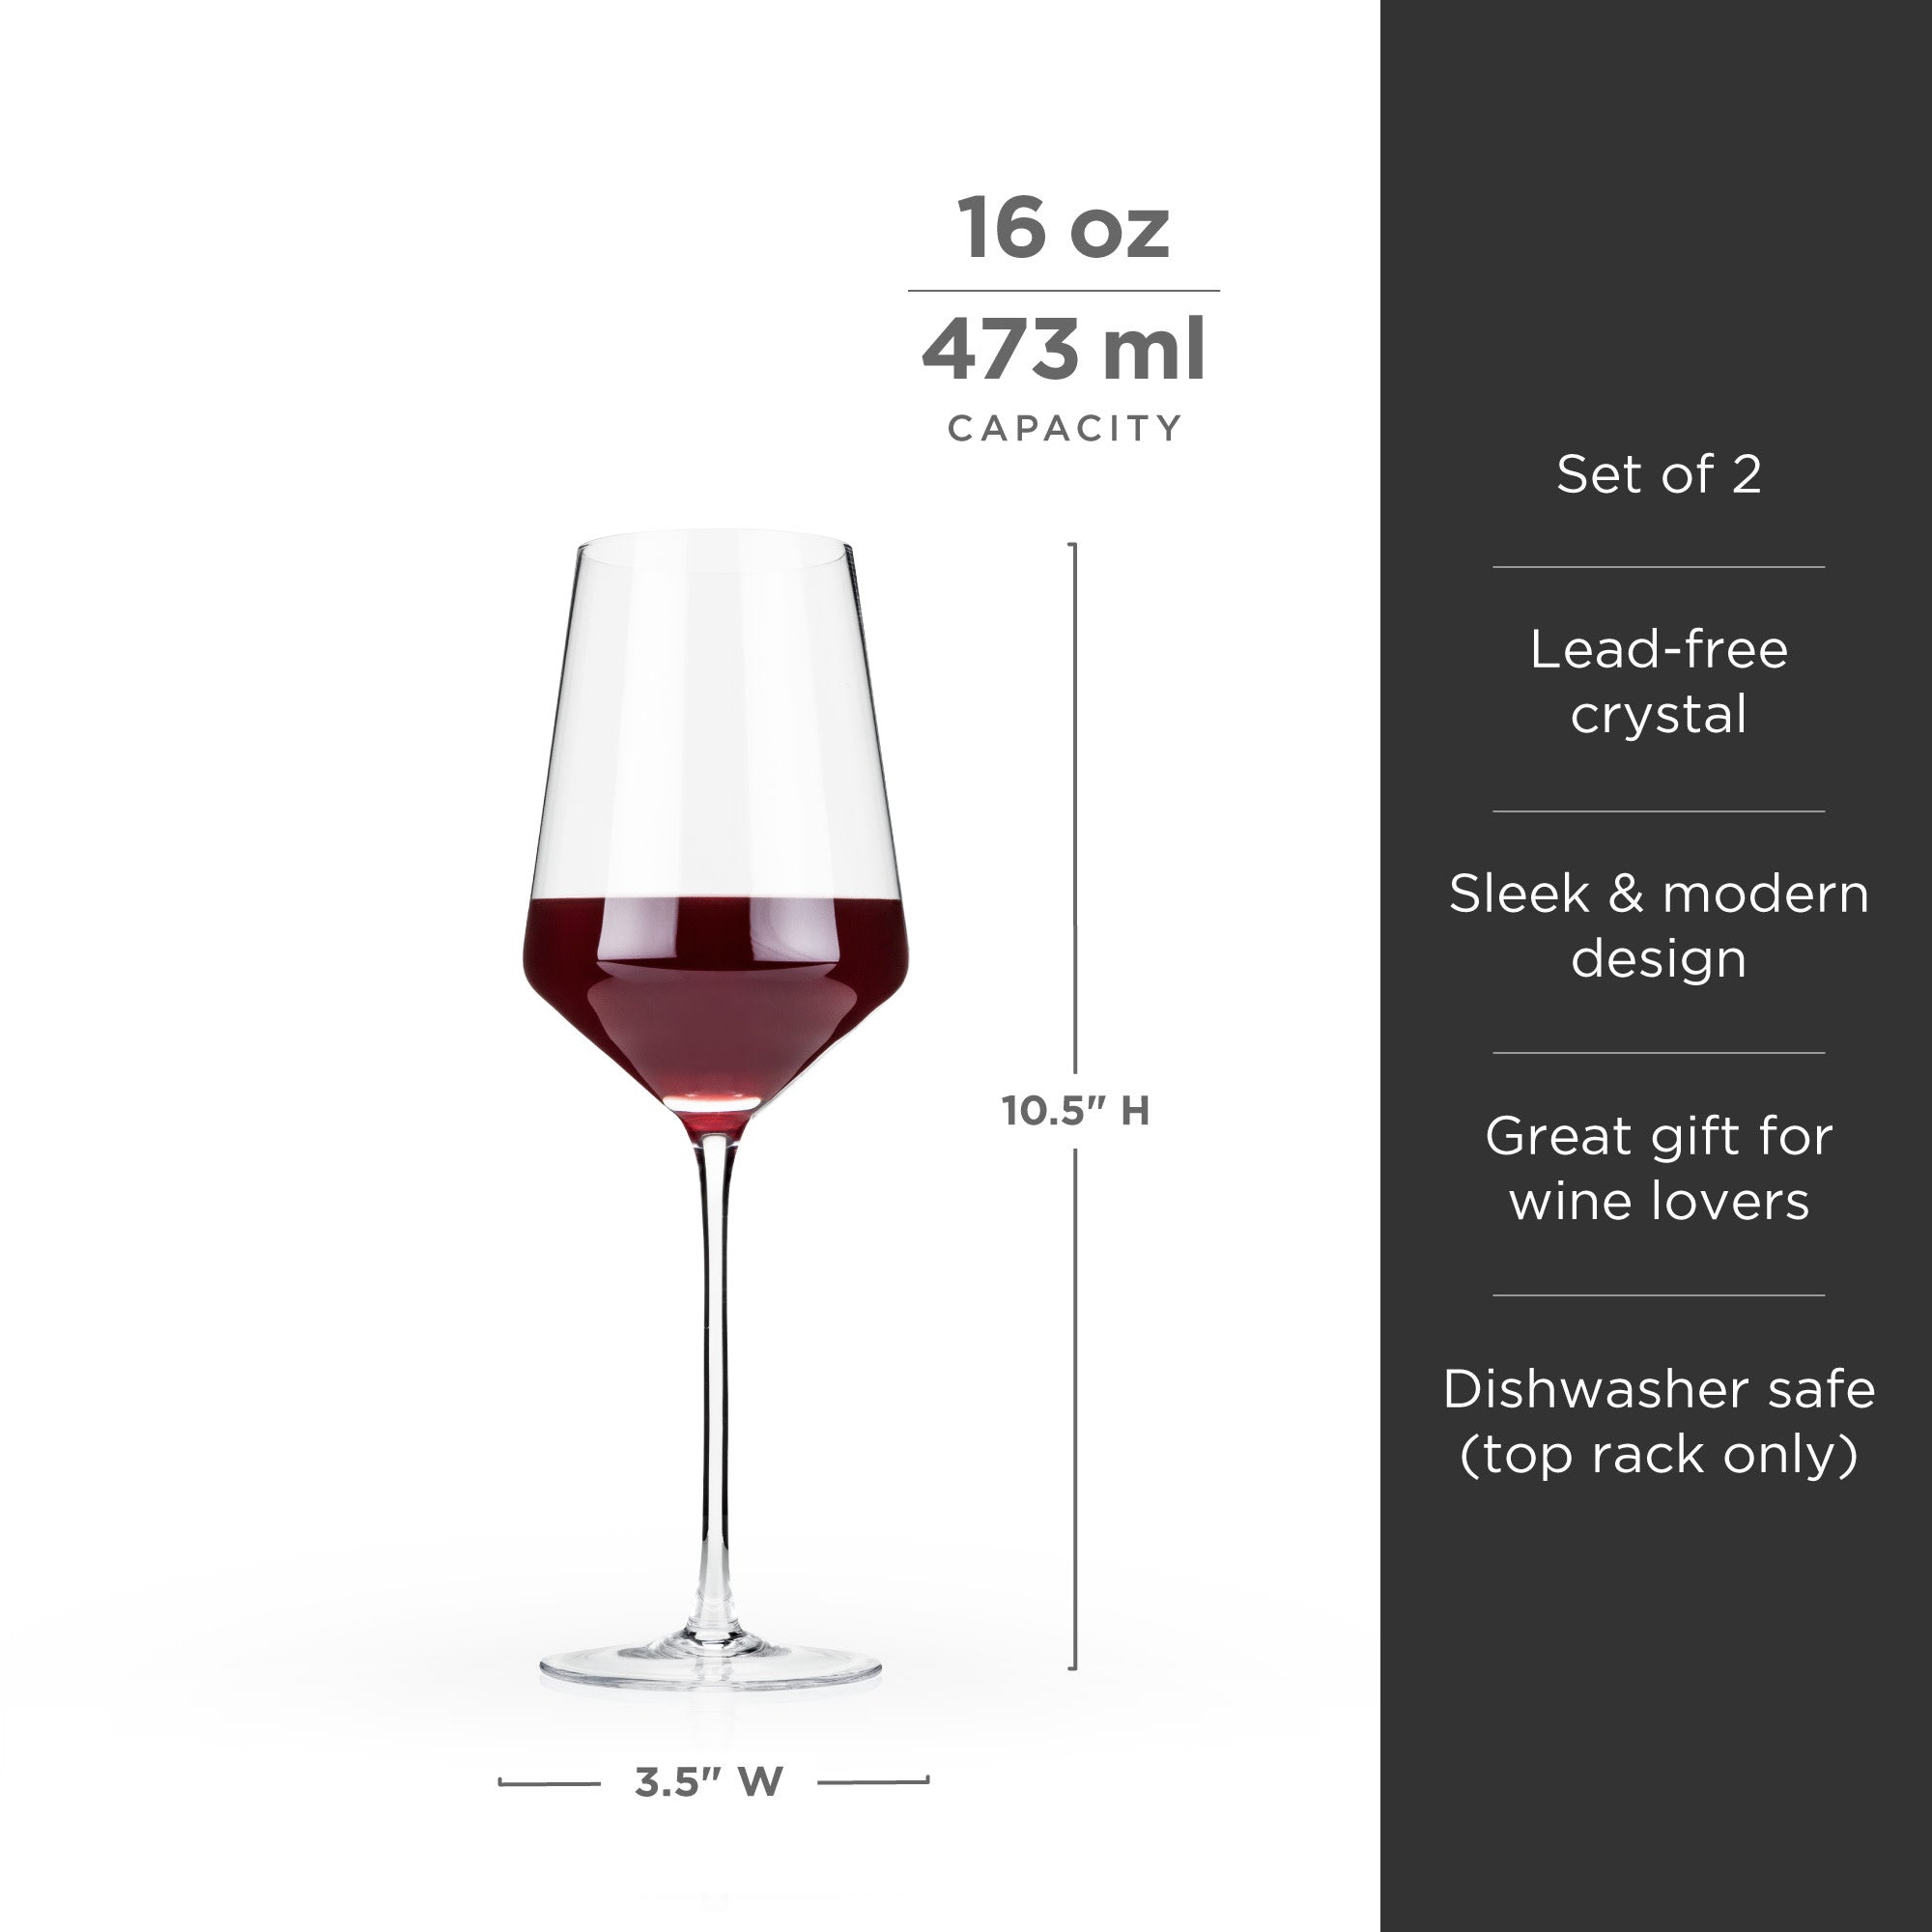 Viski Raye Faceted Crystal Wine Glasses - Modern Stemless Glass Gift Set 